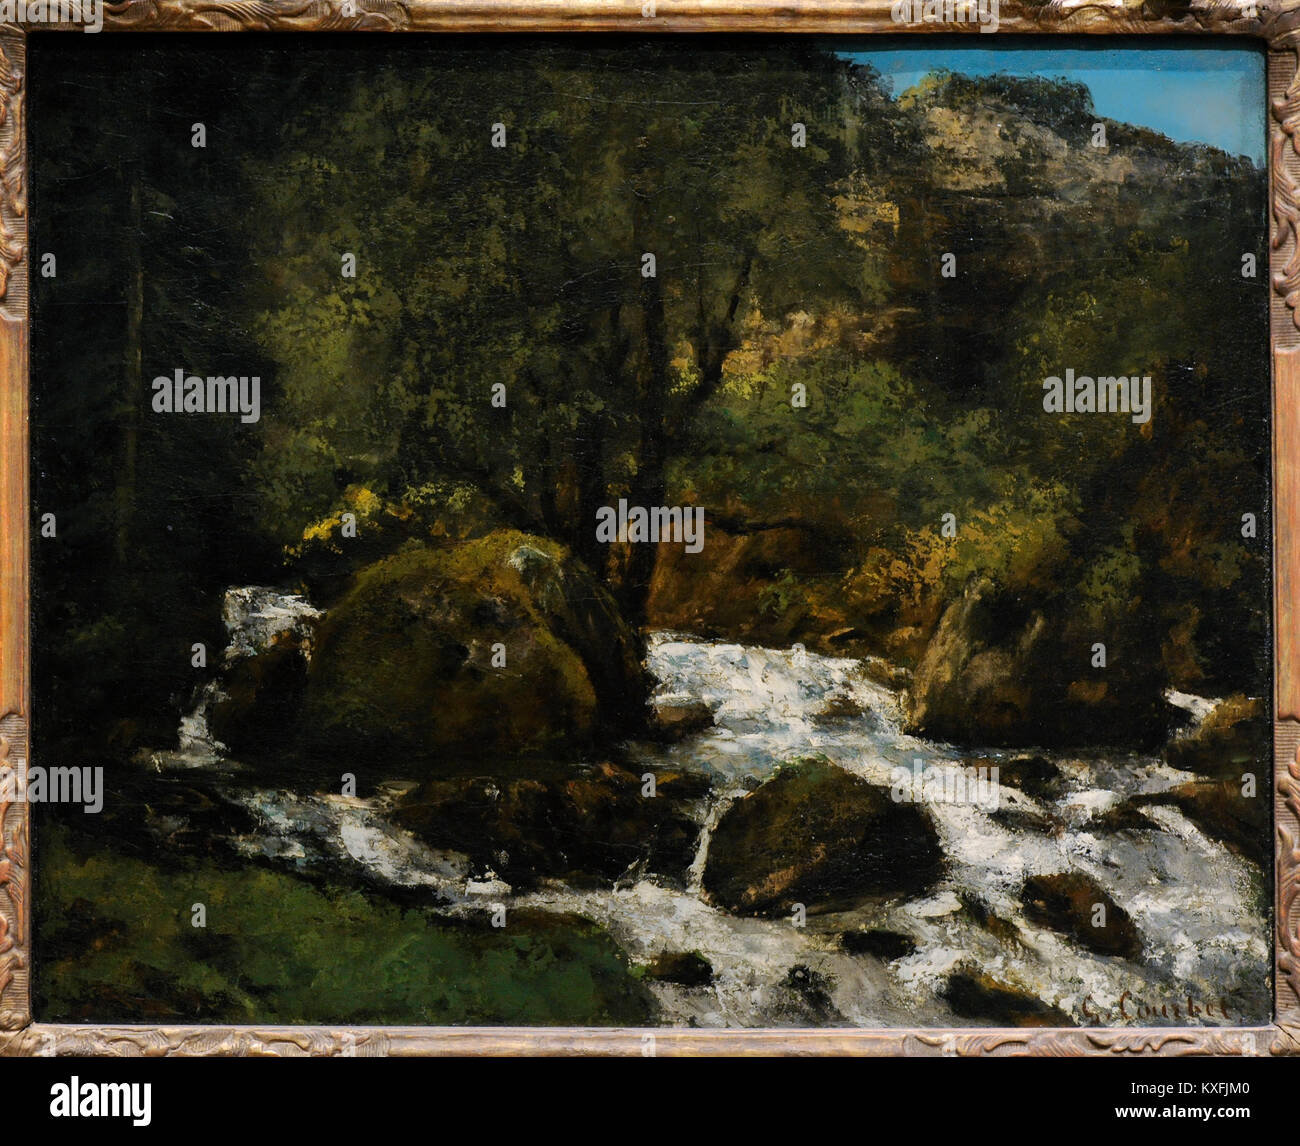 Gustave Courbet (1819-1877). Le peintre français. Un ruisseau dans la forêt, Jura, ca.1865. Galerie nationale. Oslo. La Norvège. Banque D'Images